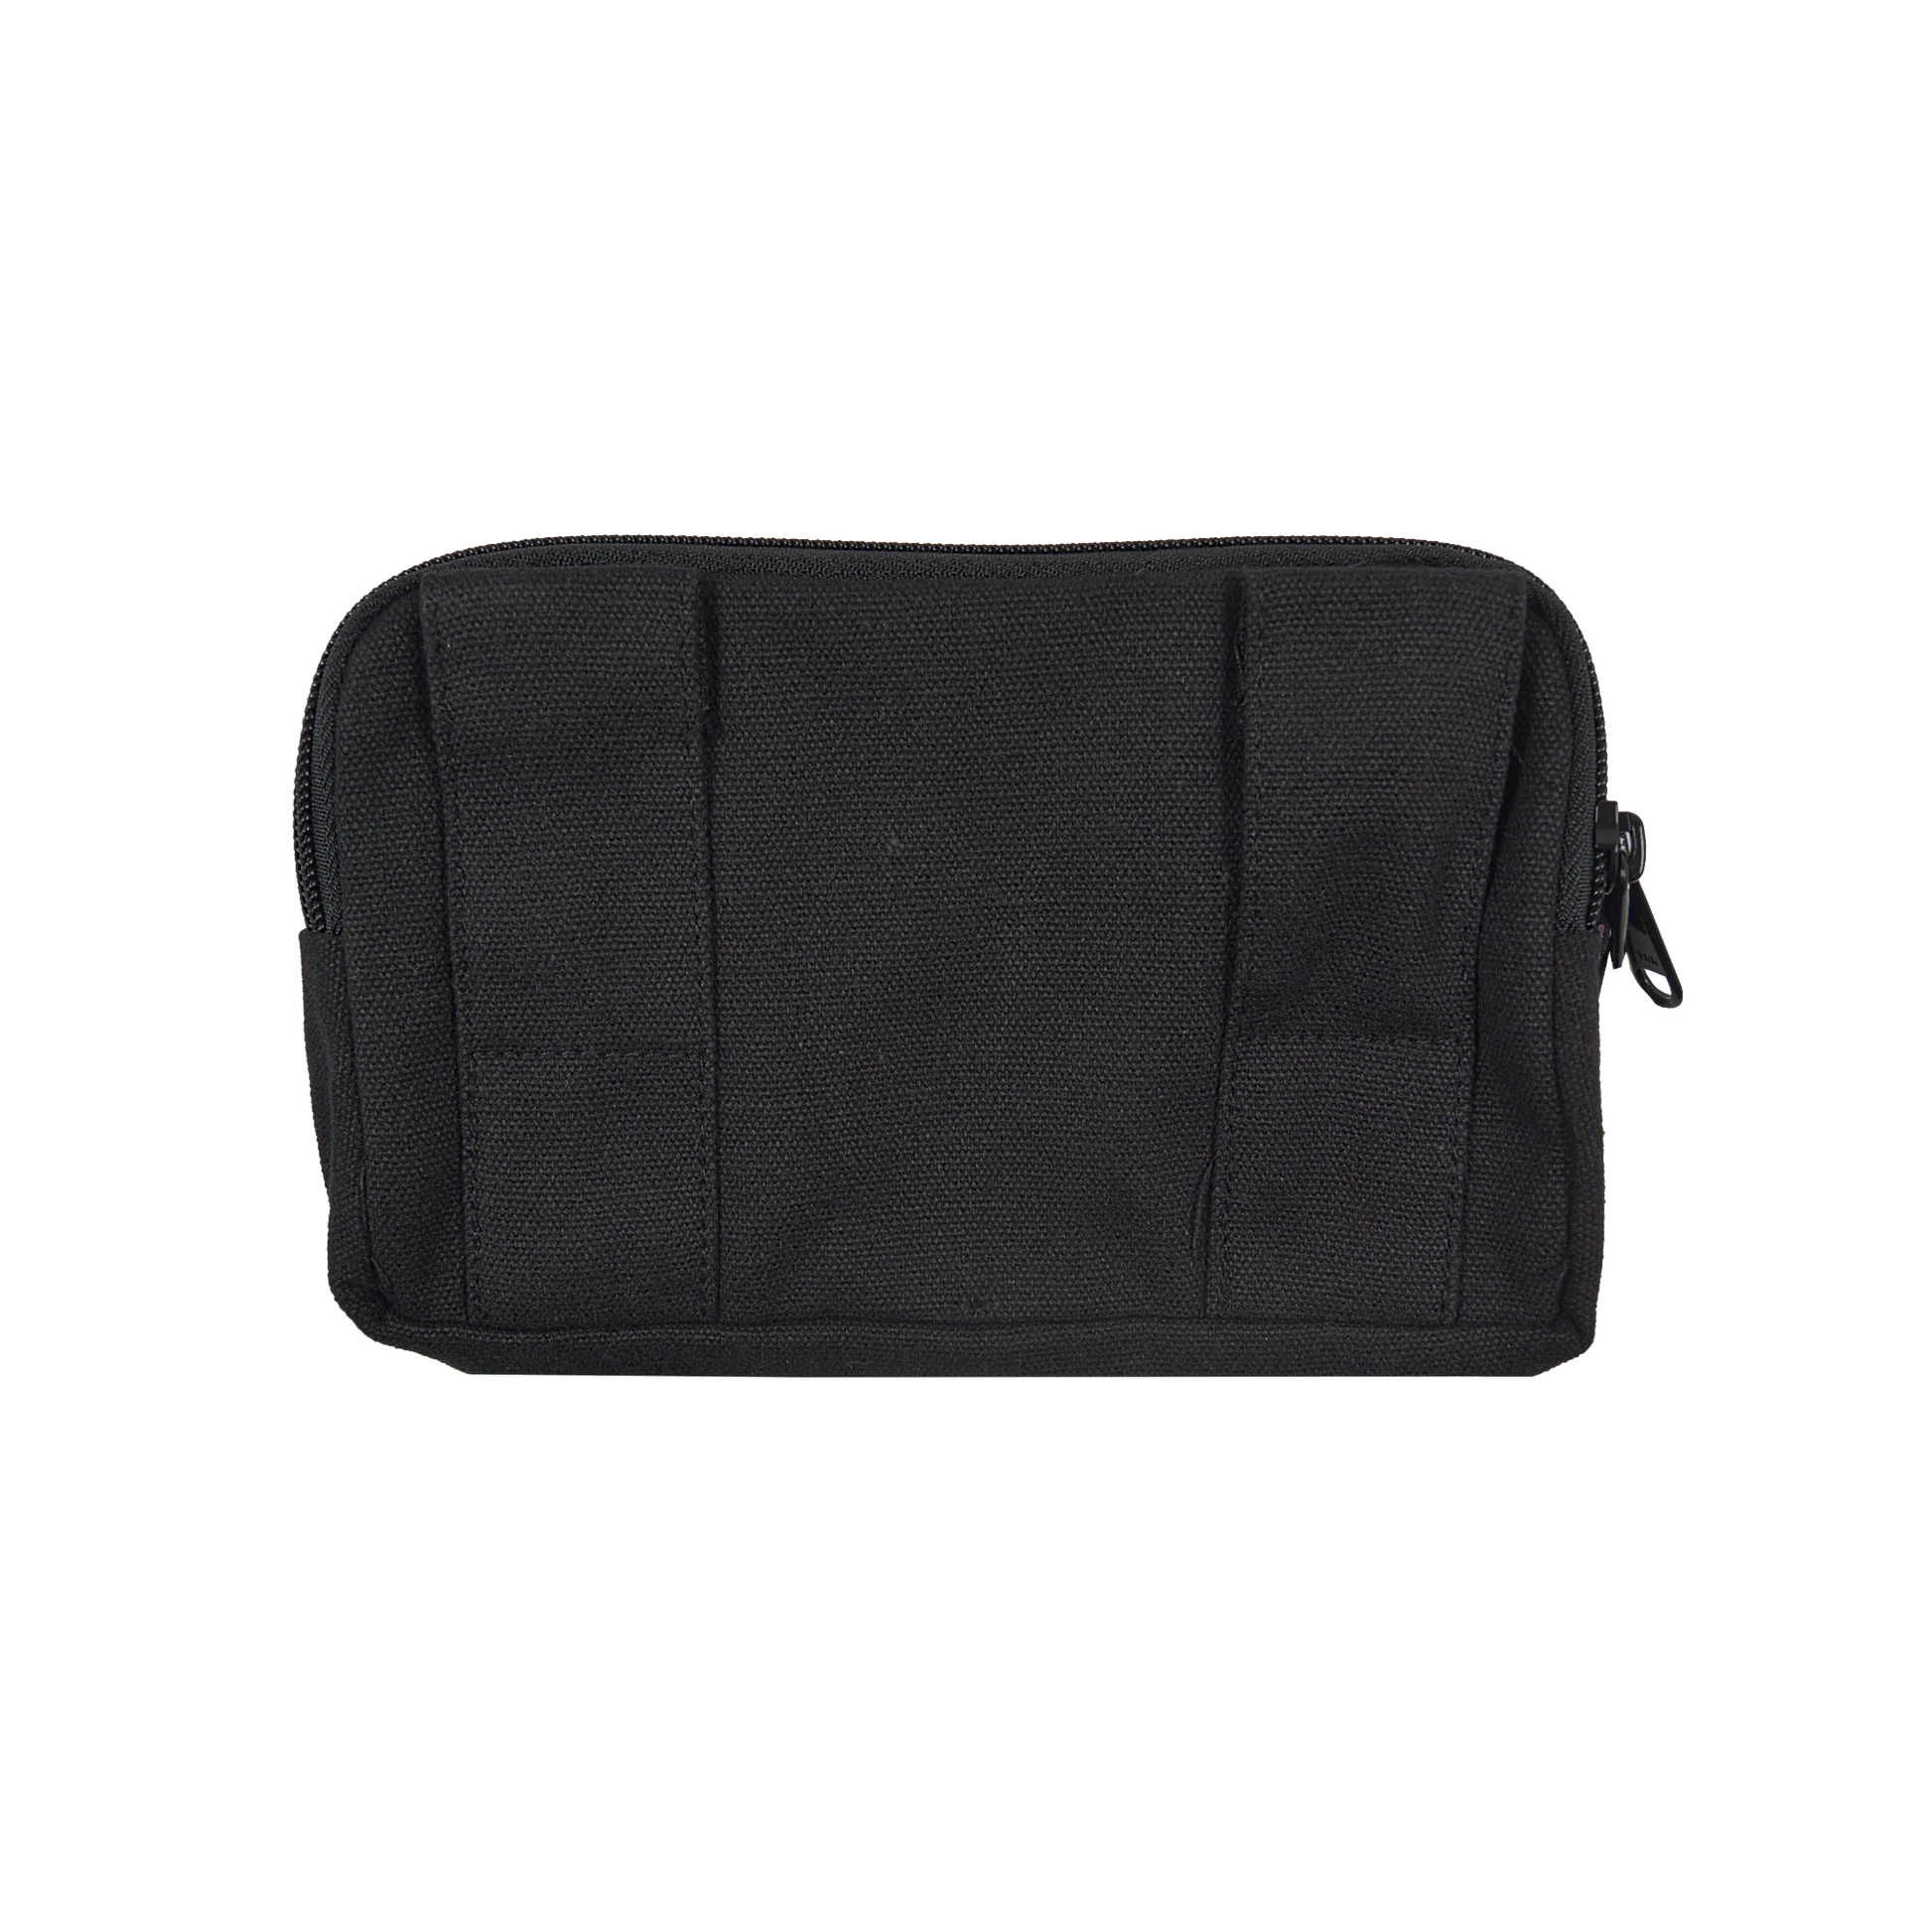 Beuteltsche aus Baumwolle schwarz. Die Tasche besitzt Reisverschlussfächer und ein Einsteckfach vorne und kann mit zwei Gürtelschlaufen auf der Rückseite an jeden Gürtel angebracht werden.